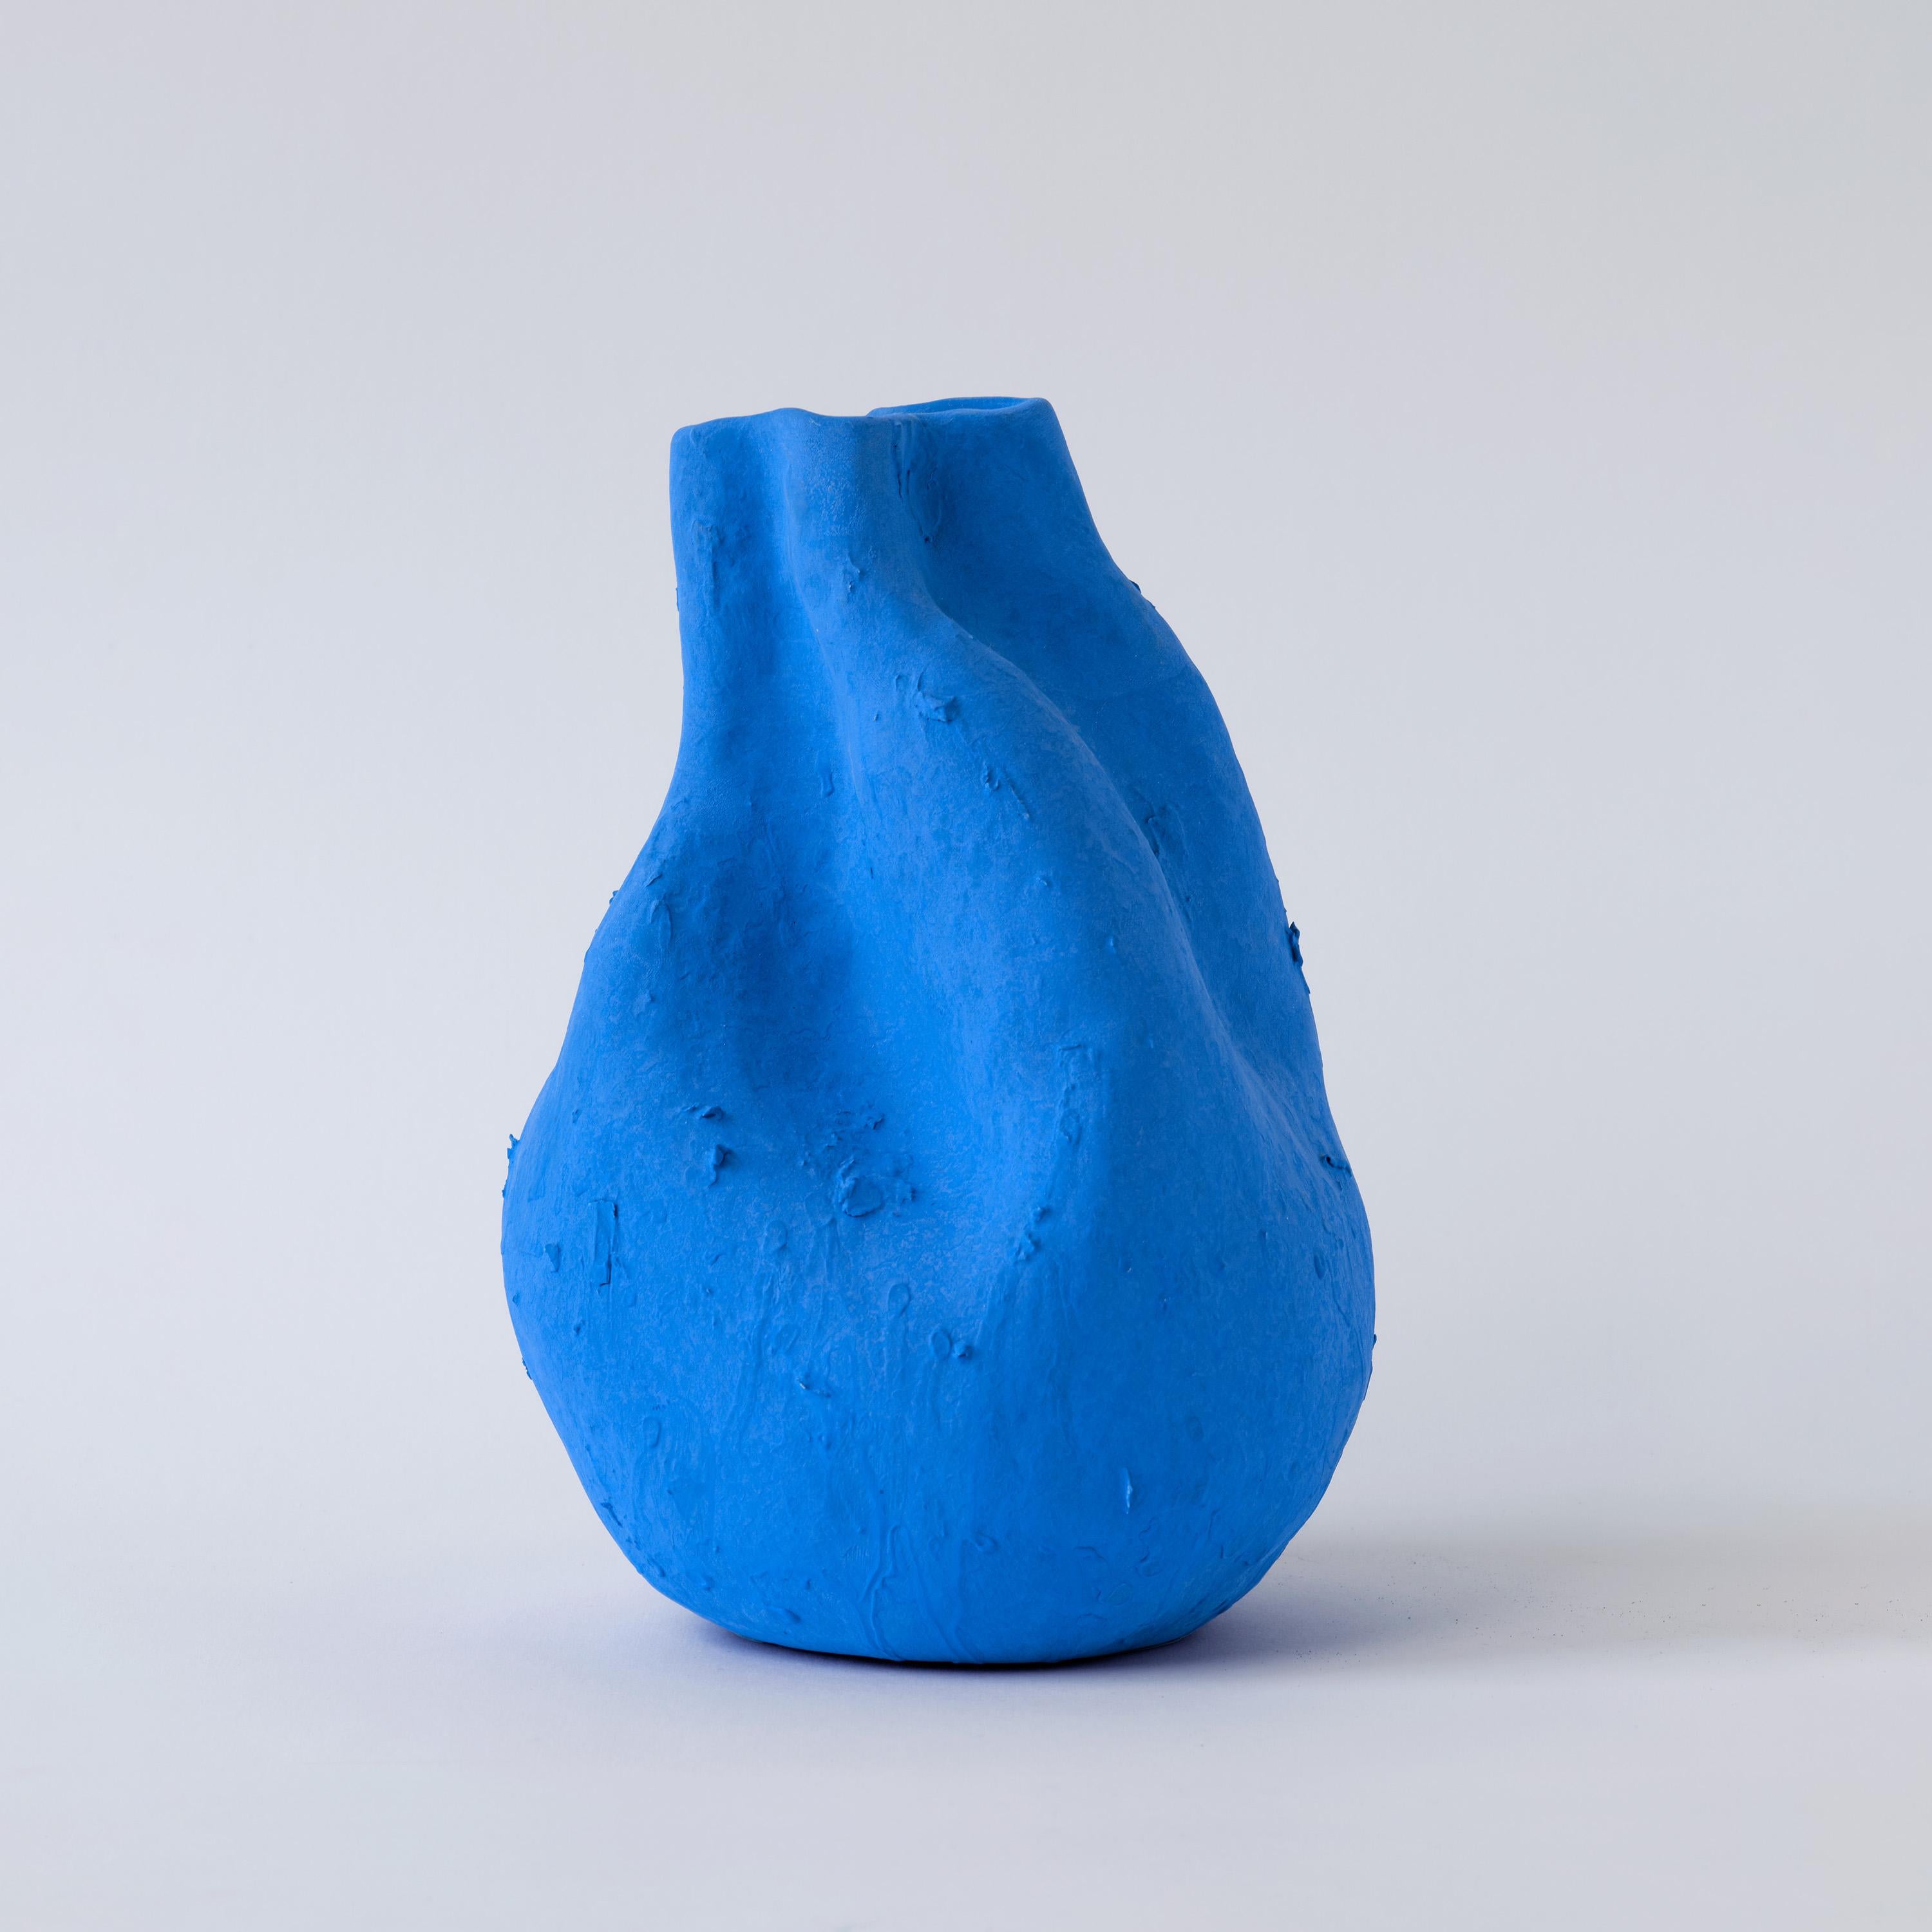 Tauchen Sie mit der Vase Alexis in die wahre Eleganz des Porzellans ein und erfreuen Sie sich an den ruhigen, mattblauen Farbtönen, die die Kühnheit der Kreativität von Yves Klein widerspiegeln. Die natürliche Form der Vase unterstreicht die